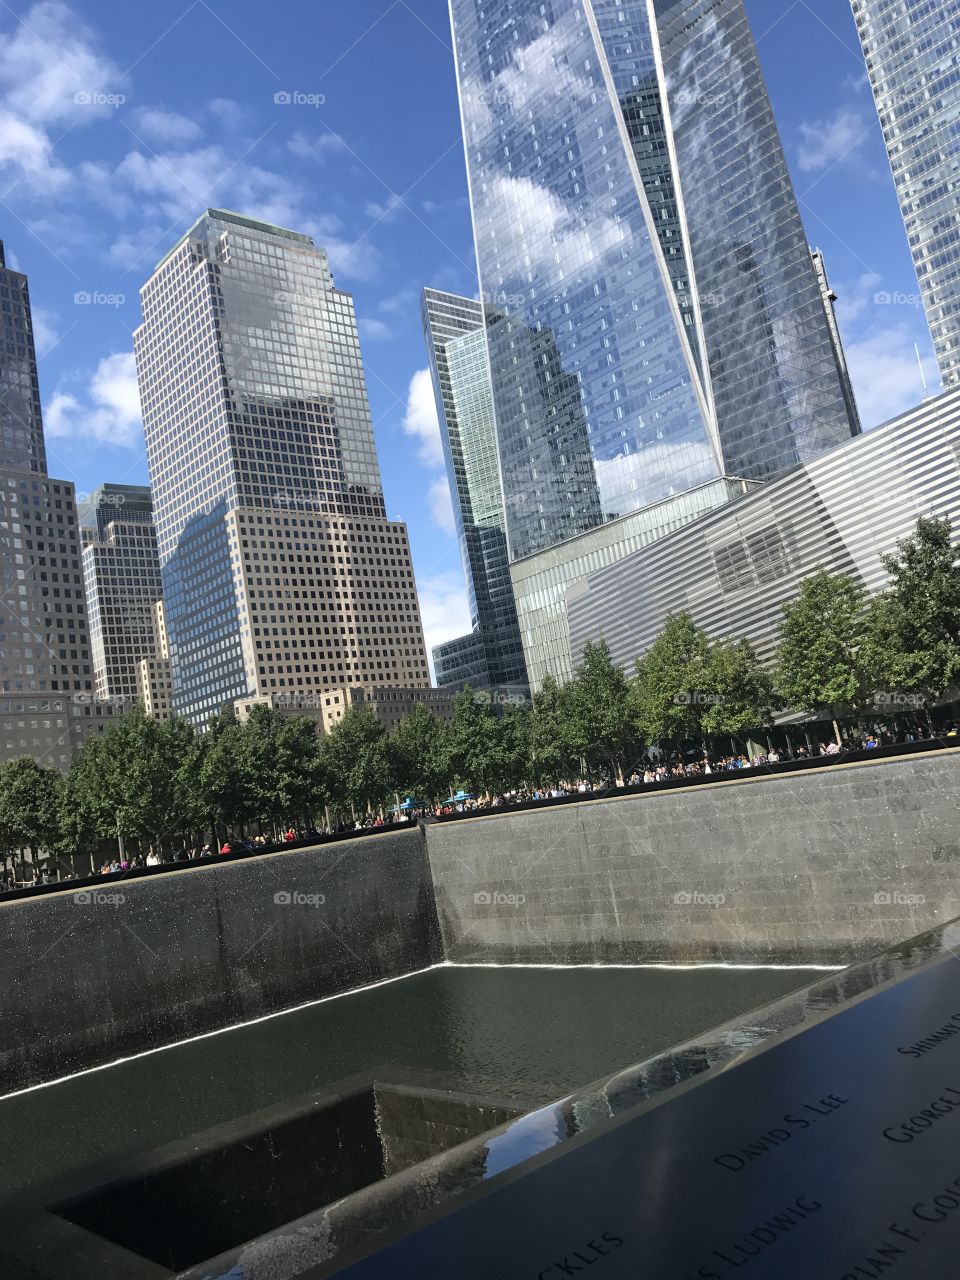 World Trade Center 9/11 memorial 